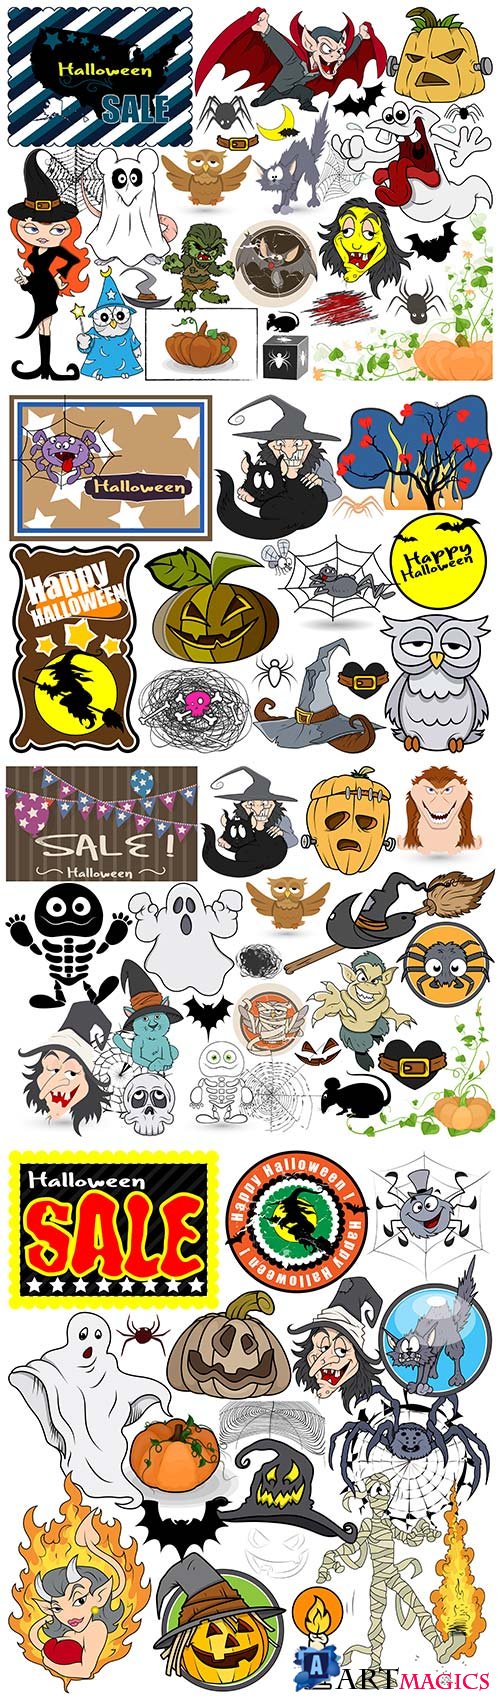 Halloween graphics vector elements